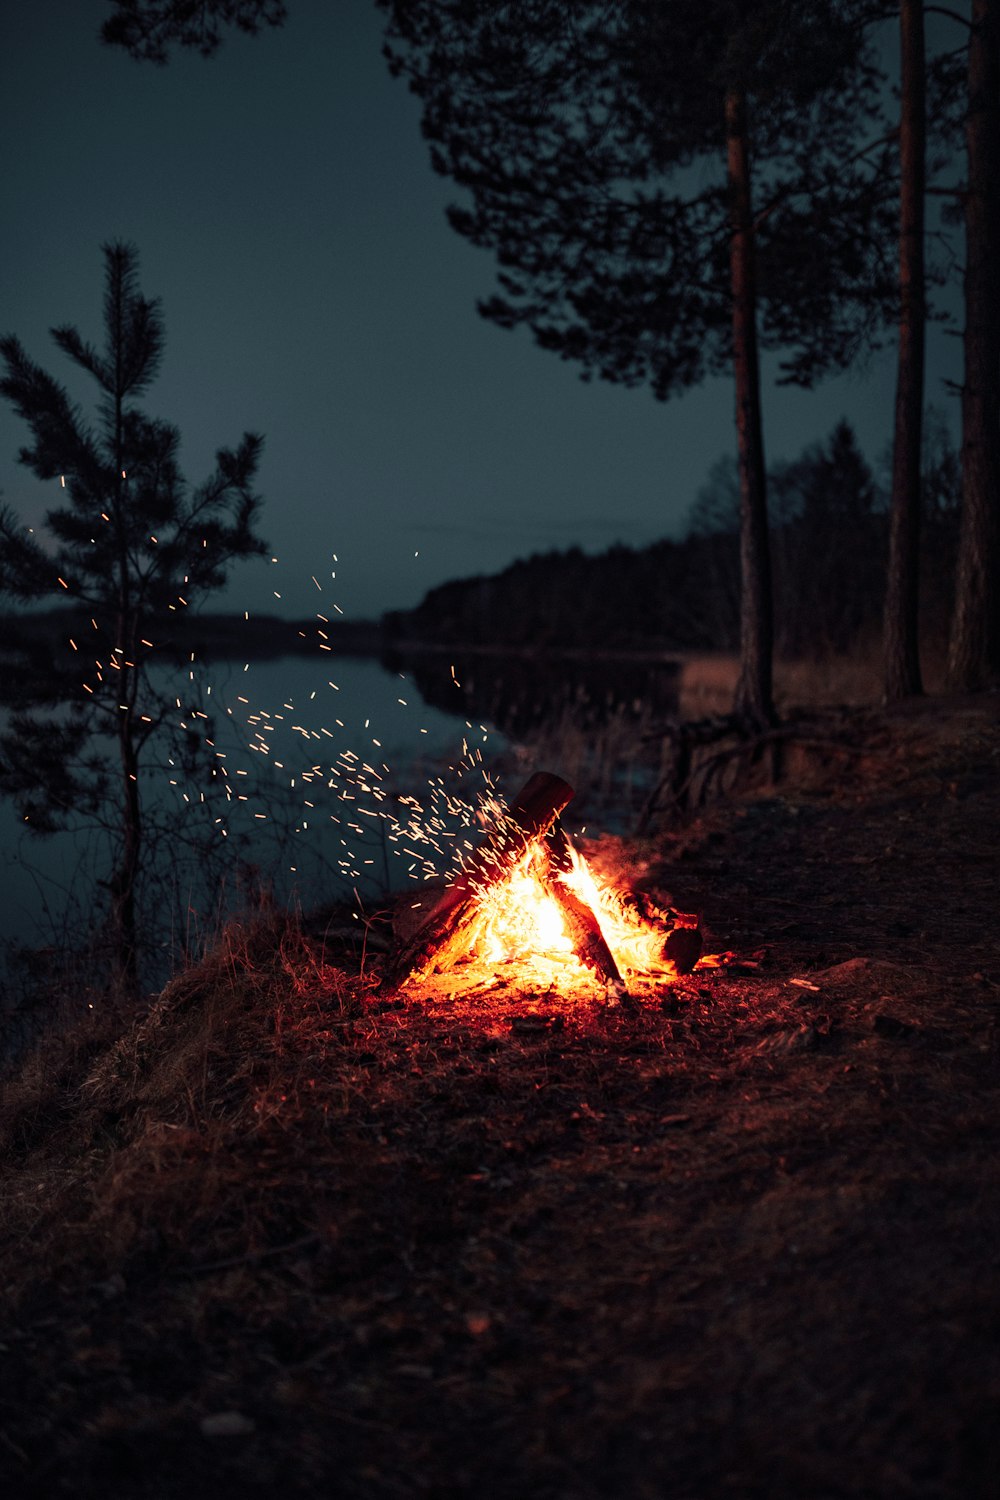 Lagerfeuer in der Nähe des Sees während der Nachtzeit